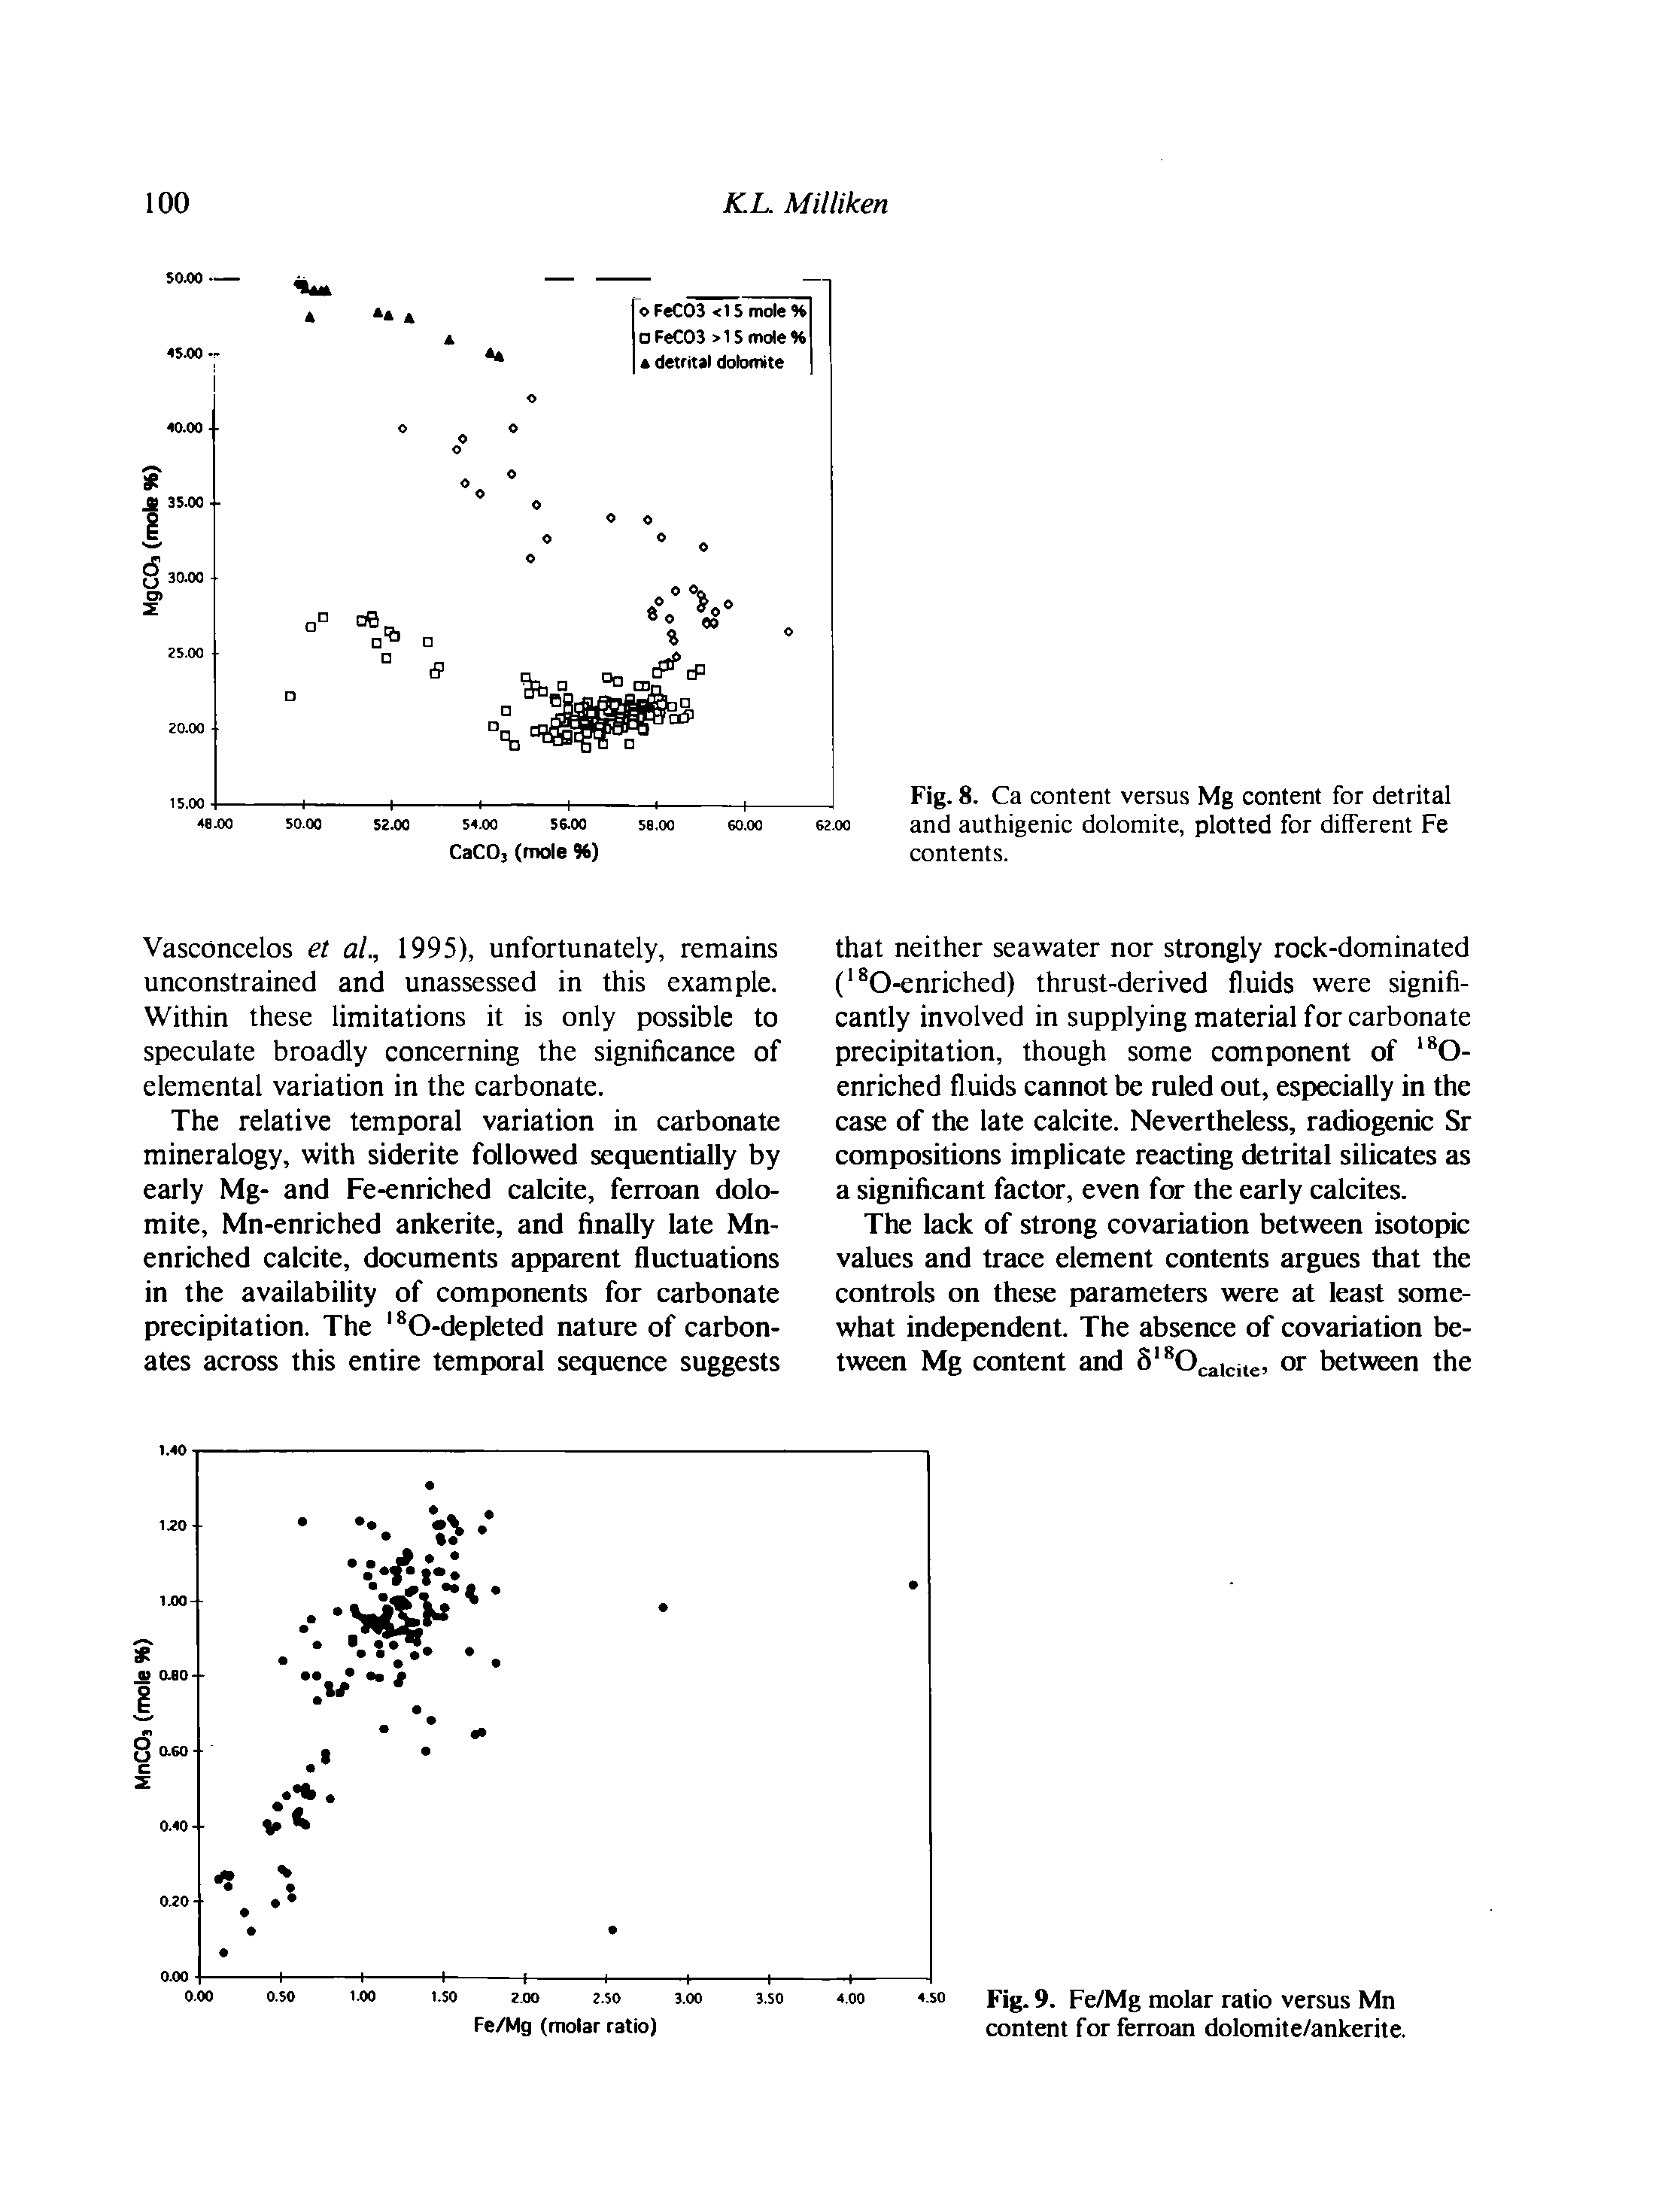 Fig. 9. Fe/Mg molar ratio versus Mn content for ferroan dolomite/ankerite.